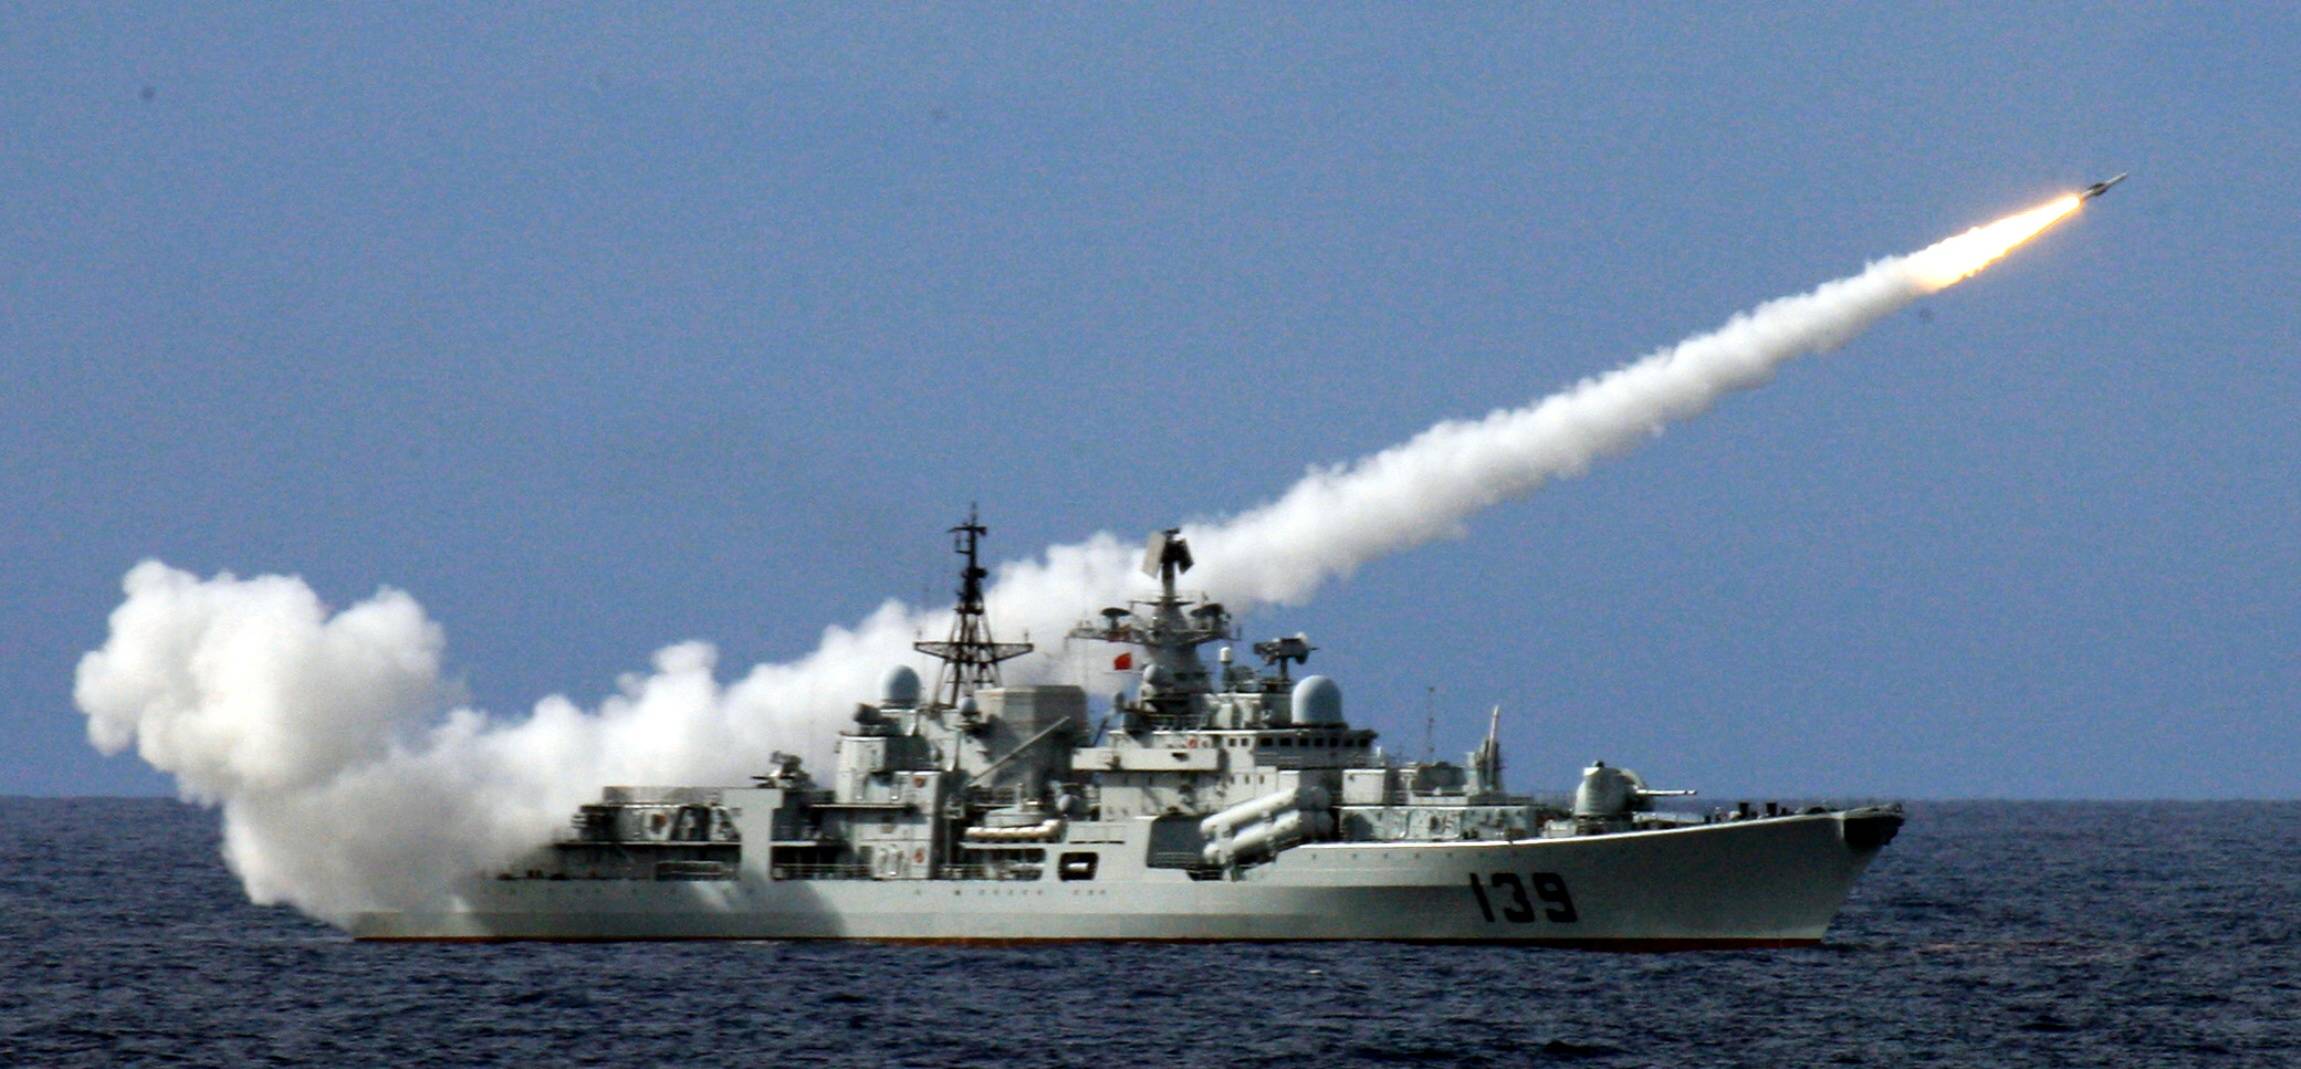 Putin sendet Kriegsschiffe in Rote Meer! NATO-Schiffe und Russen gefährlich nah beeinander!